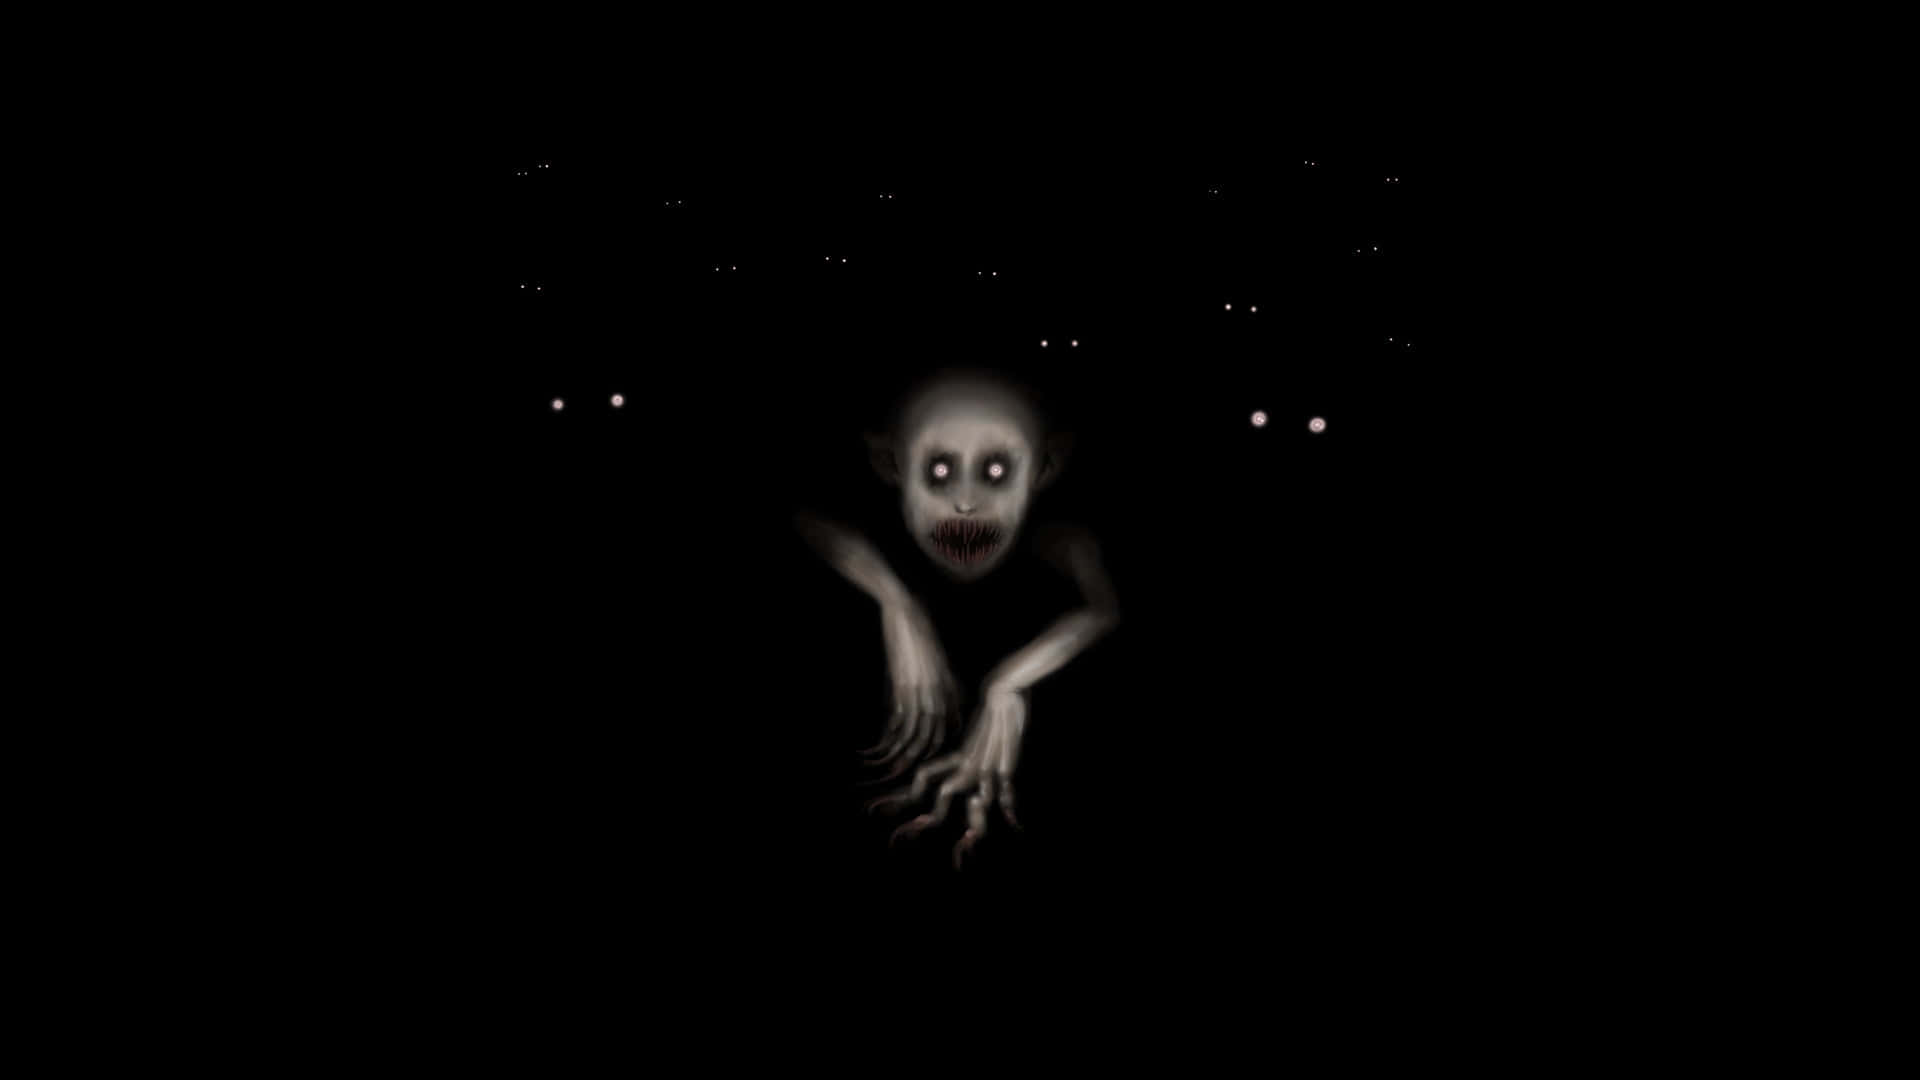 Imagende Un Fantasma Aterrador En La Noche.